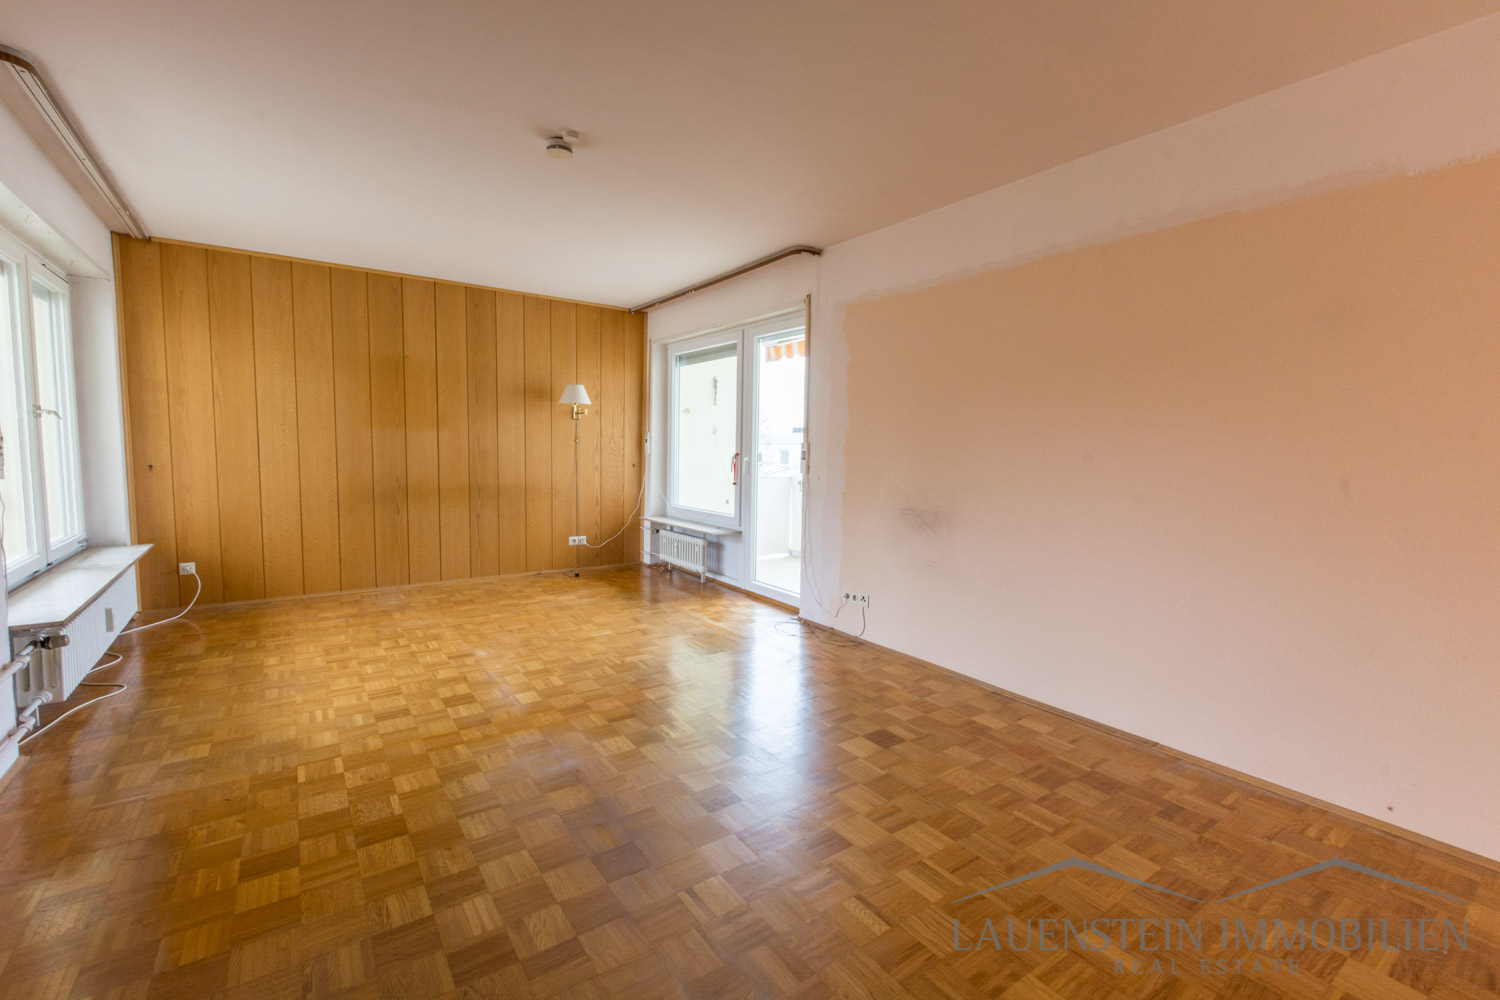 Wohnung in Wiesbaden zu verkaufen